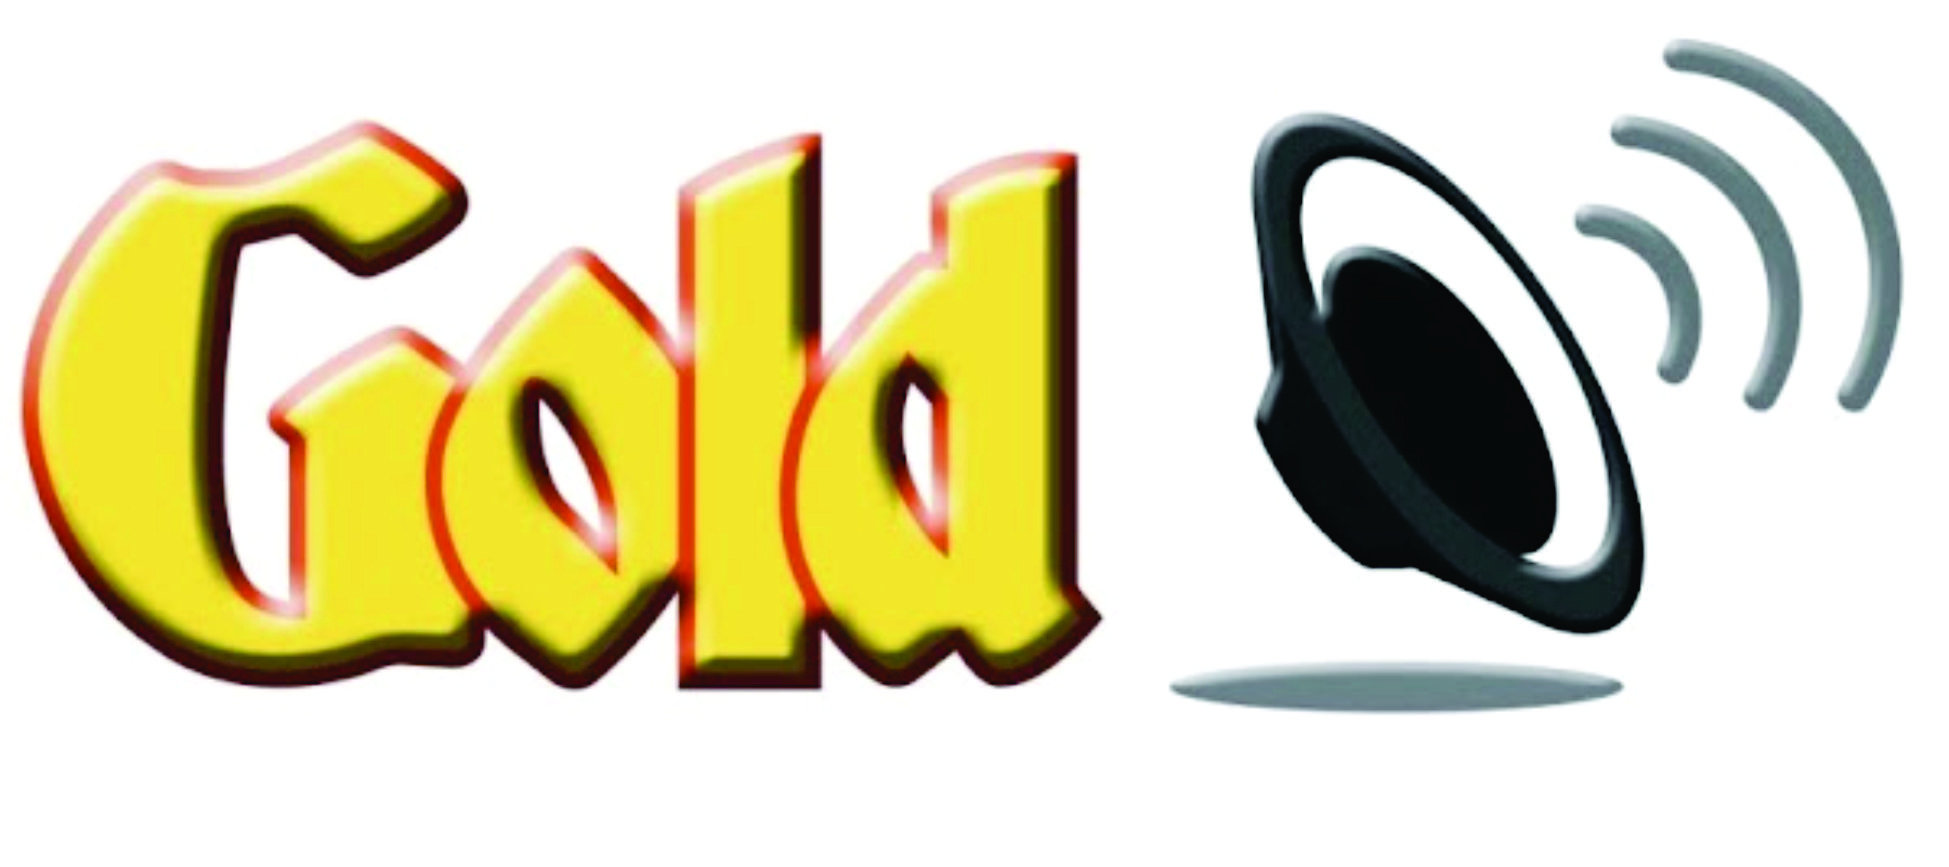 Goldsound lắp đặt cho quán HẠ MÂY - Juice & Coffee| Từ Sơn